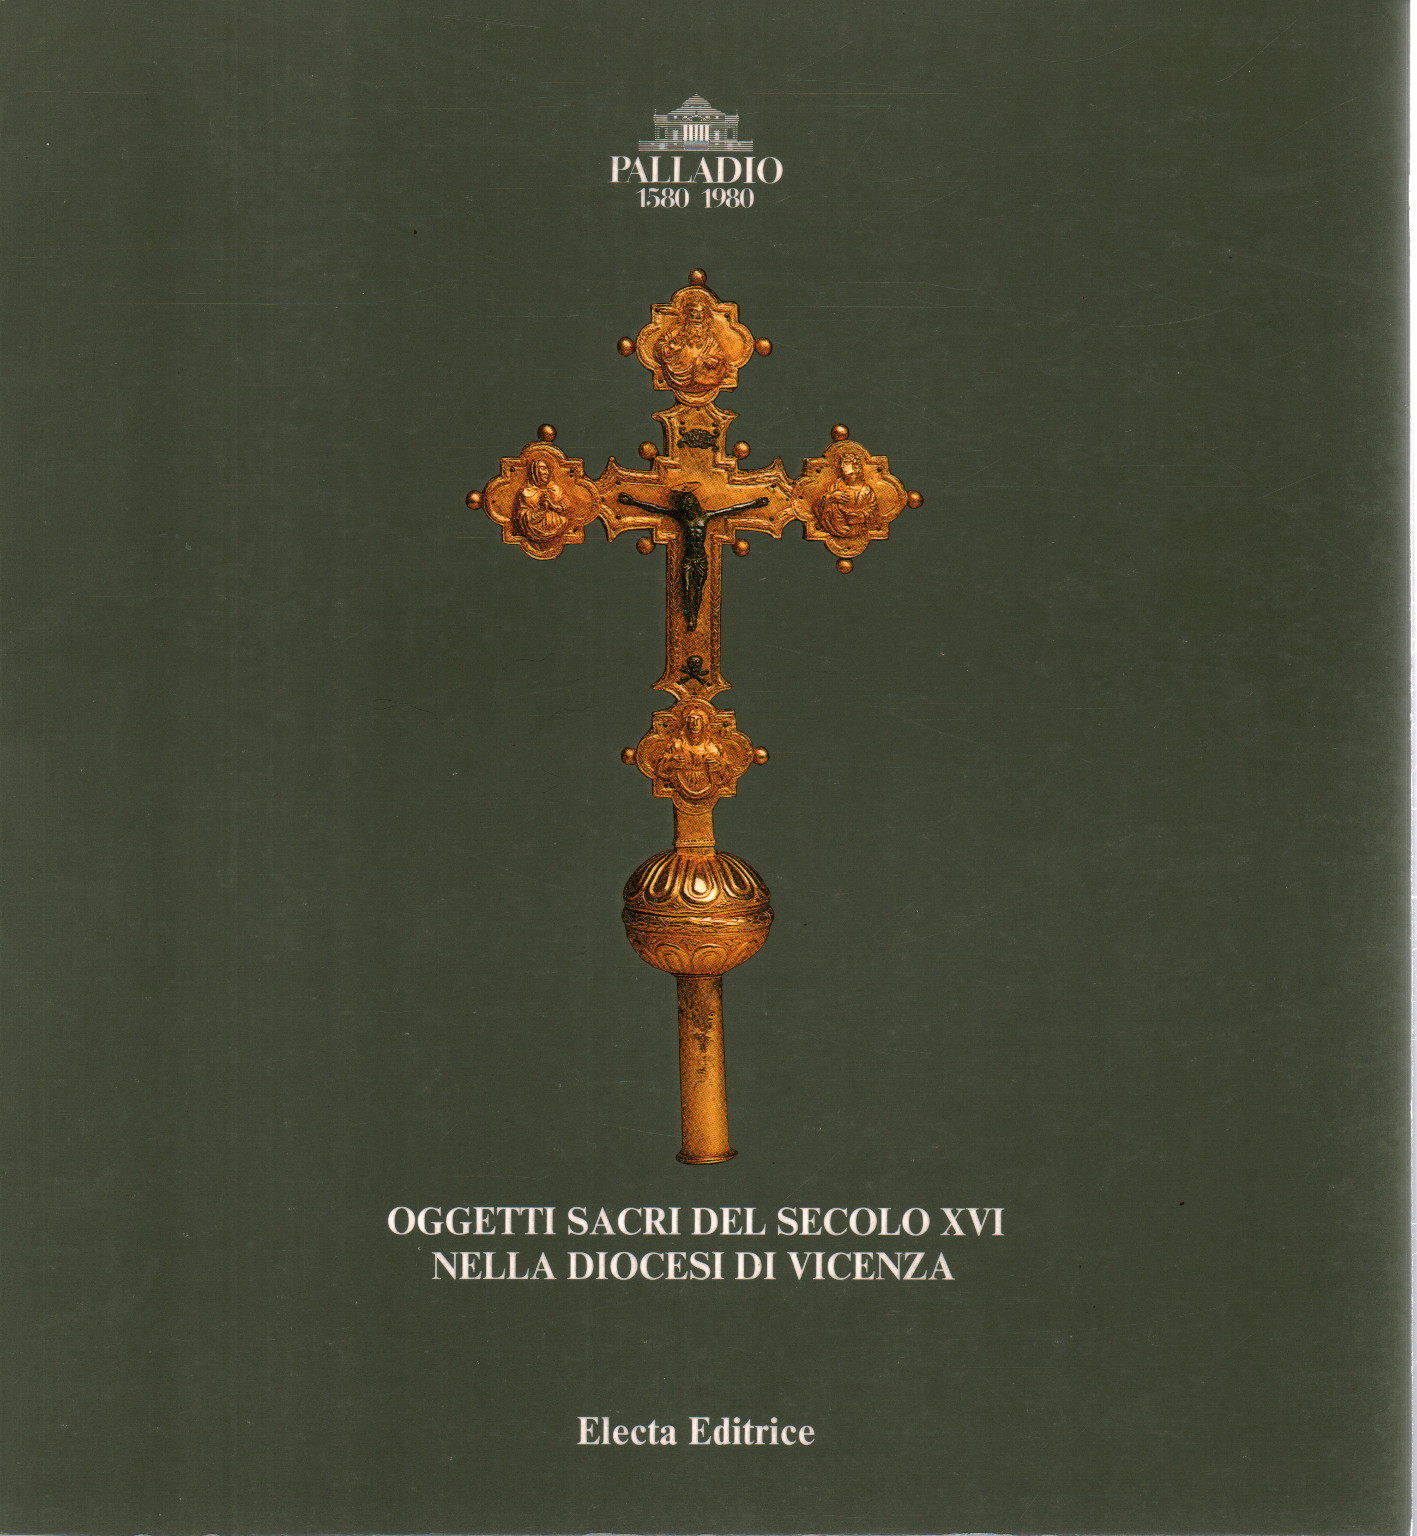 Objetos sagrados del siglo XVI en la diócesis de Vicio, s.una.